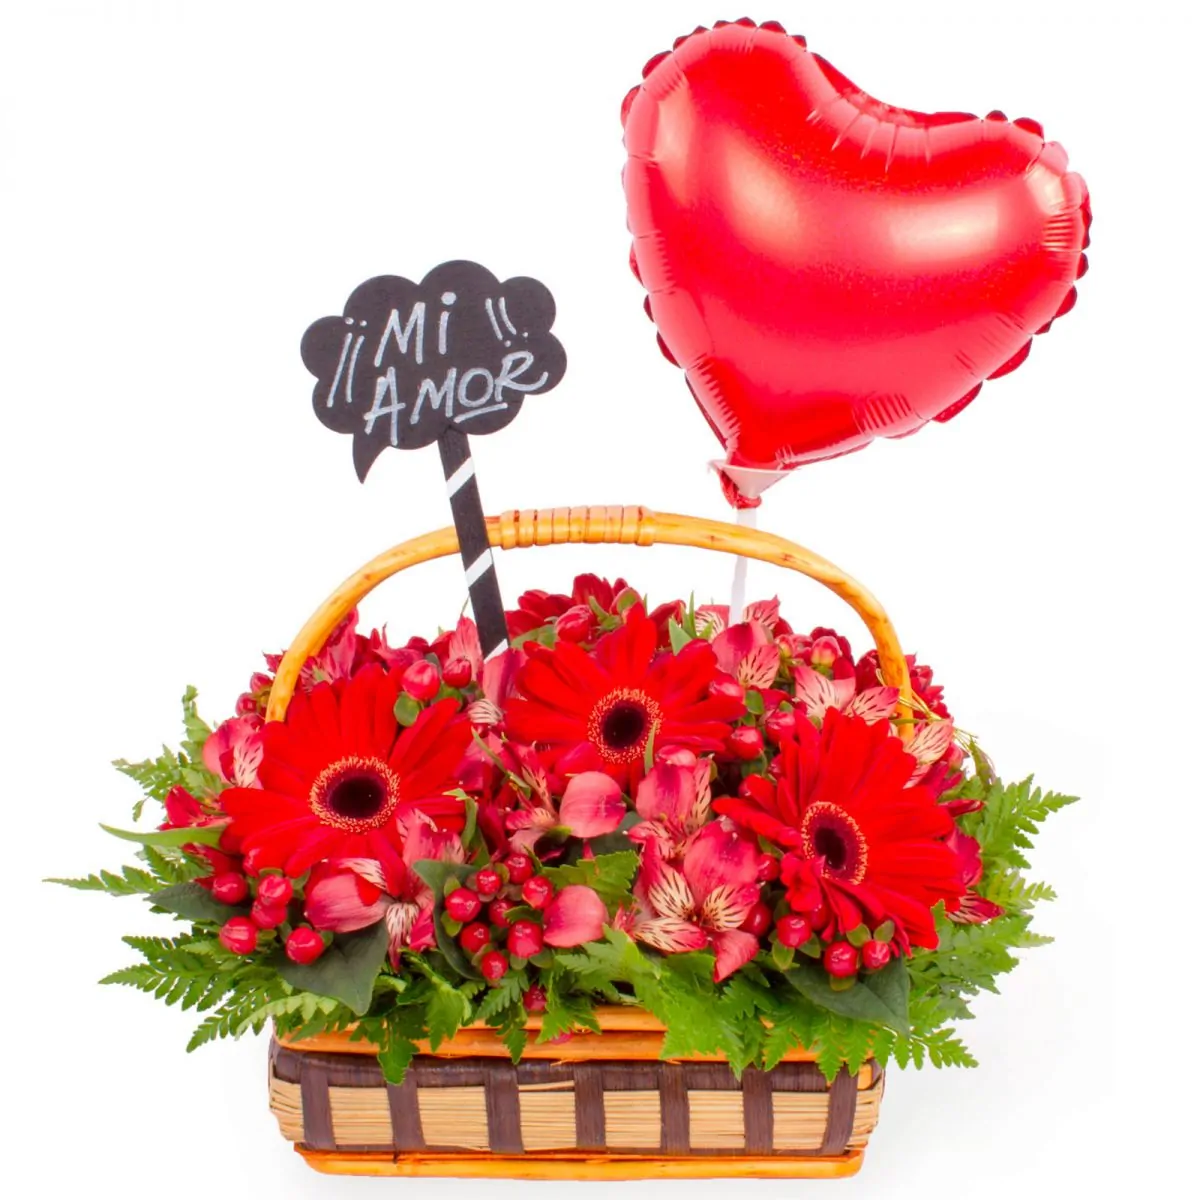 Foto principal Canasto Mi Amor - Arreglo floral en canasto de mimbre con globo de corazón, gerberas, astromelias e hypericum rojo